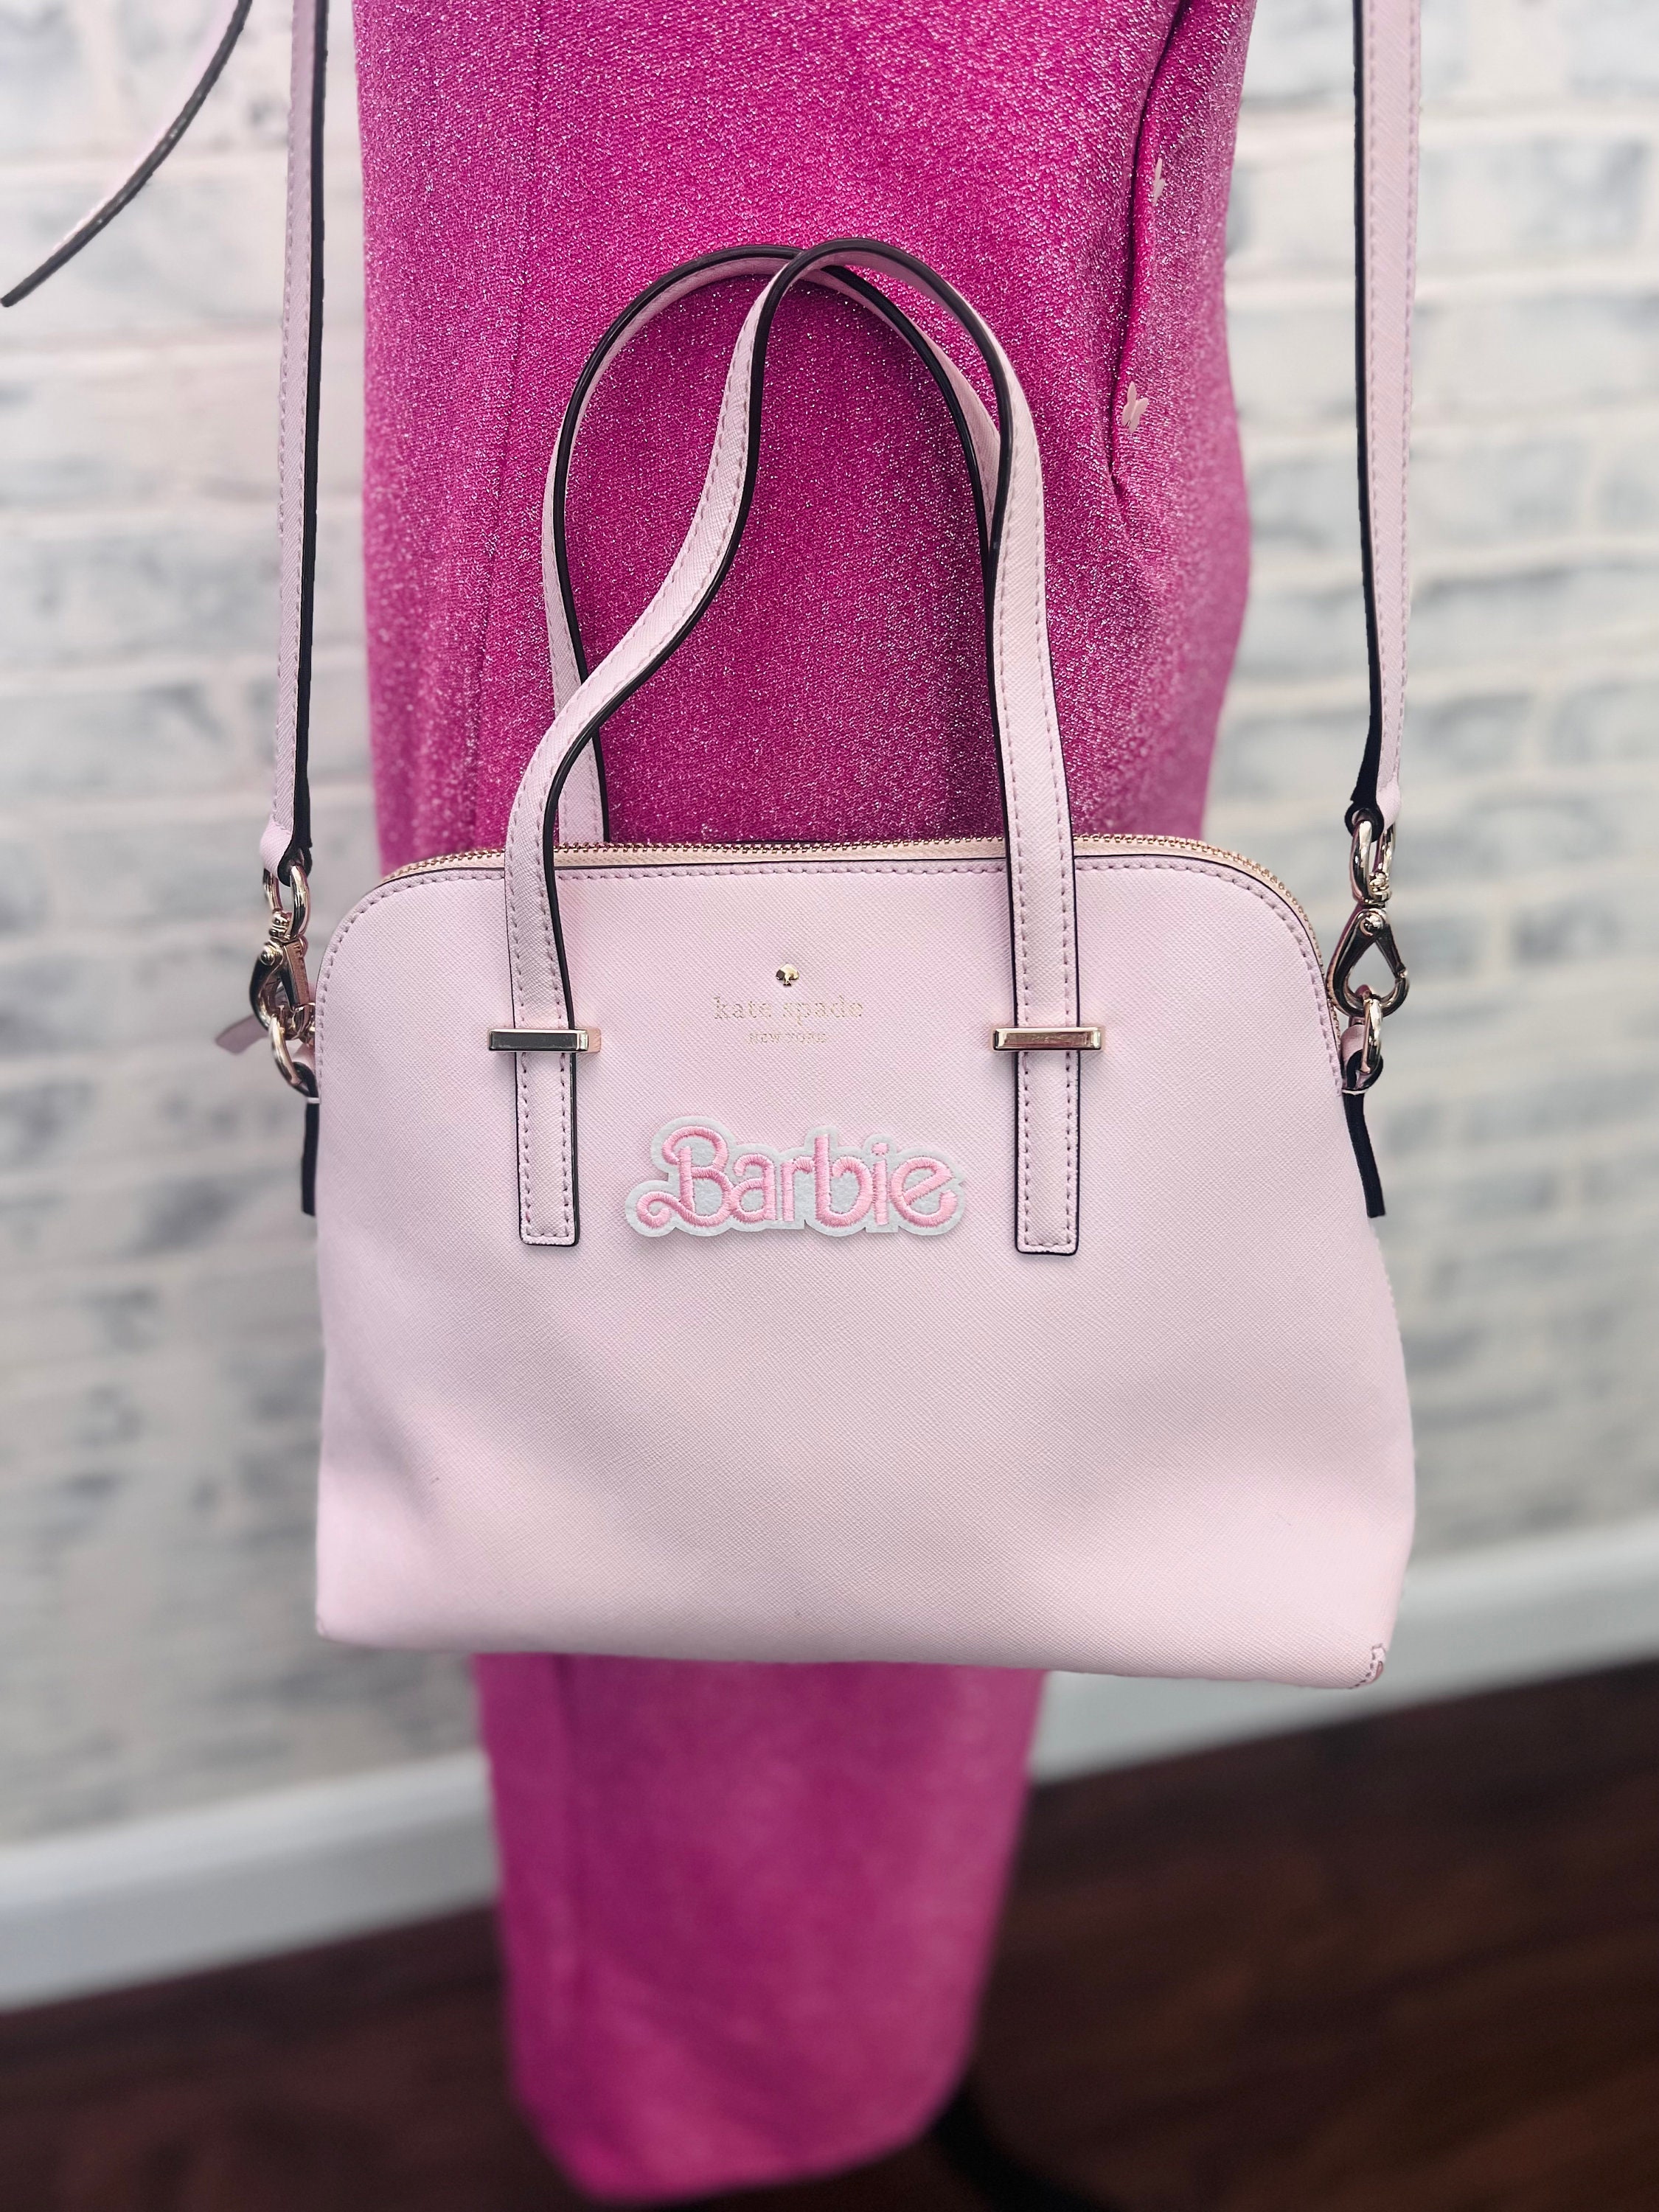 Pink Kate Spade Bag 